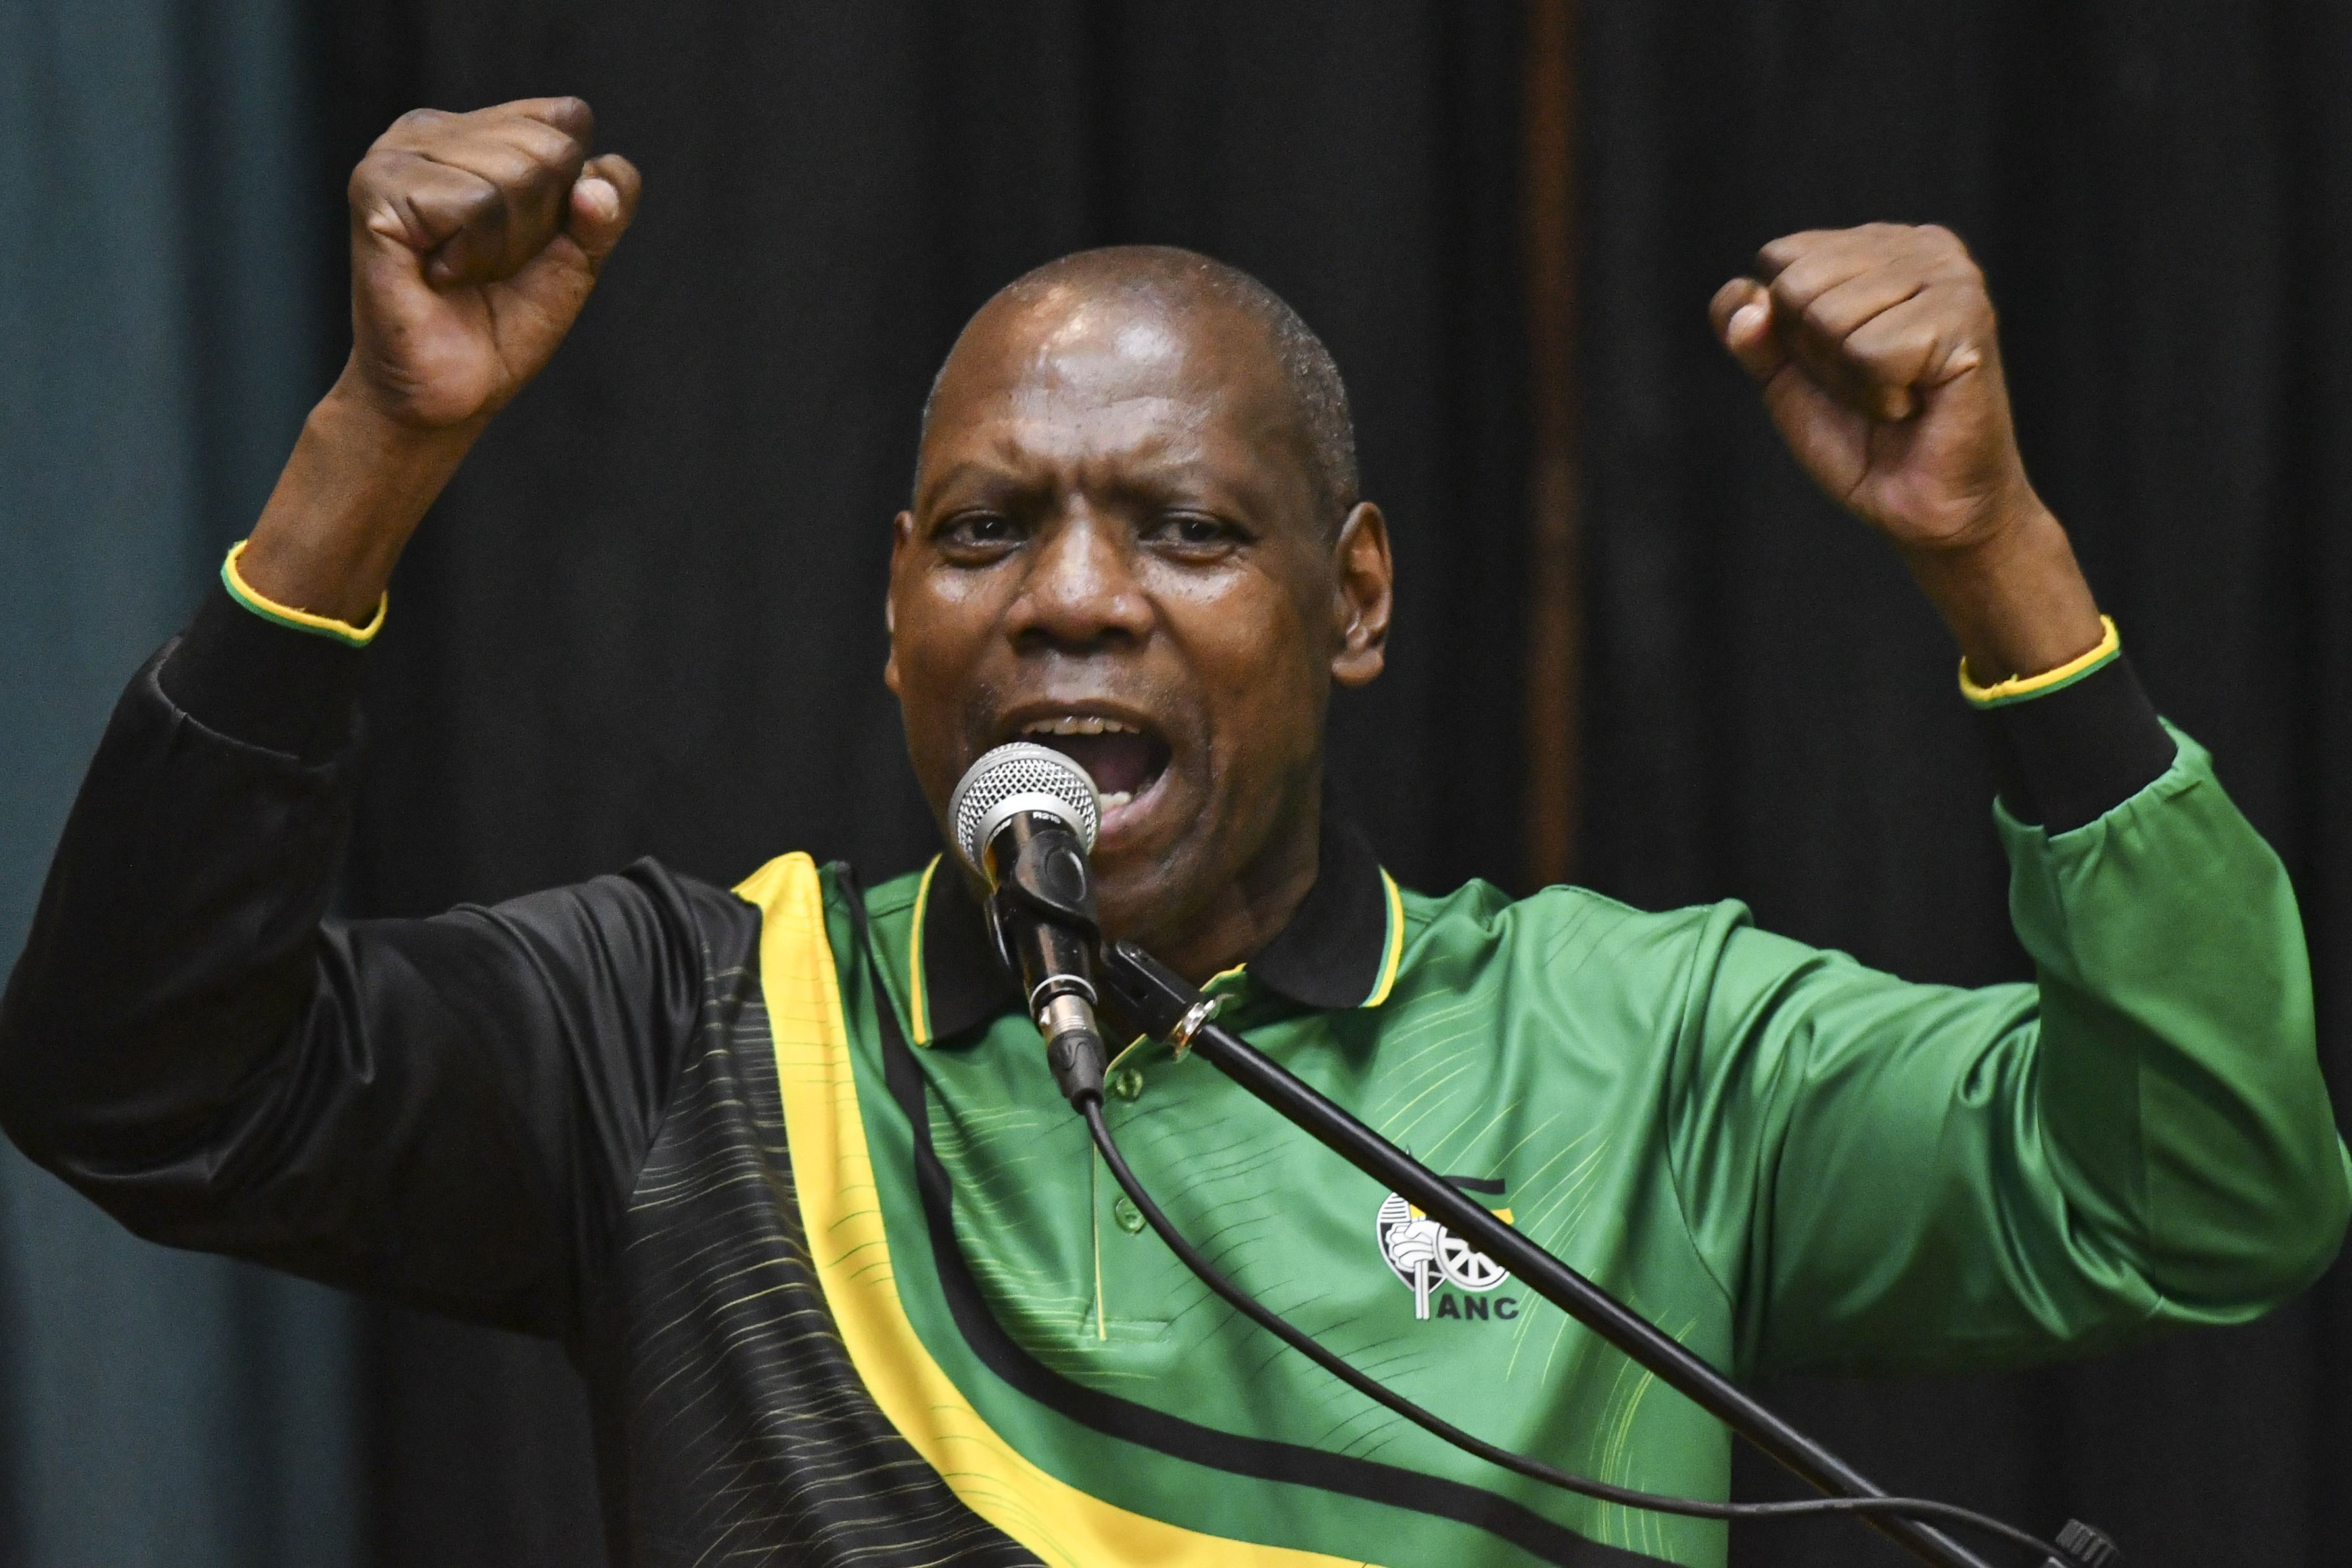 Queenin-JZ-ANC-4 O ANC espera capitalizar a popularidade de Jacob Zuma na KZN para reverter a maré política e conquistar os eleitoresO ANC em KwaZulu-Natal (KZN)